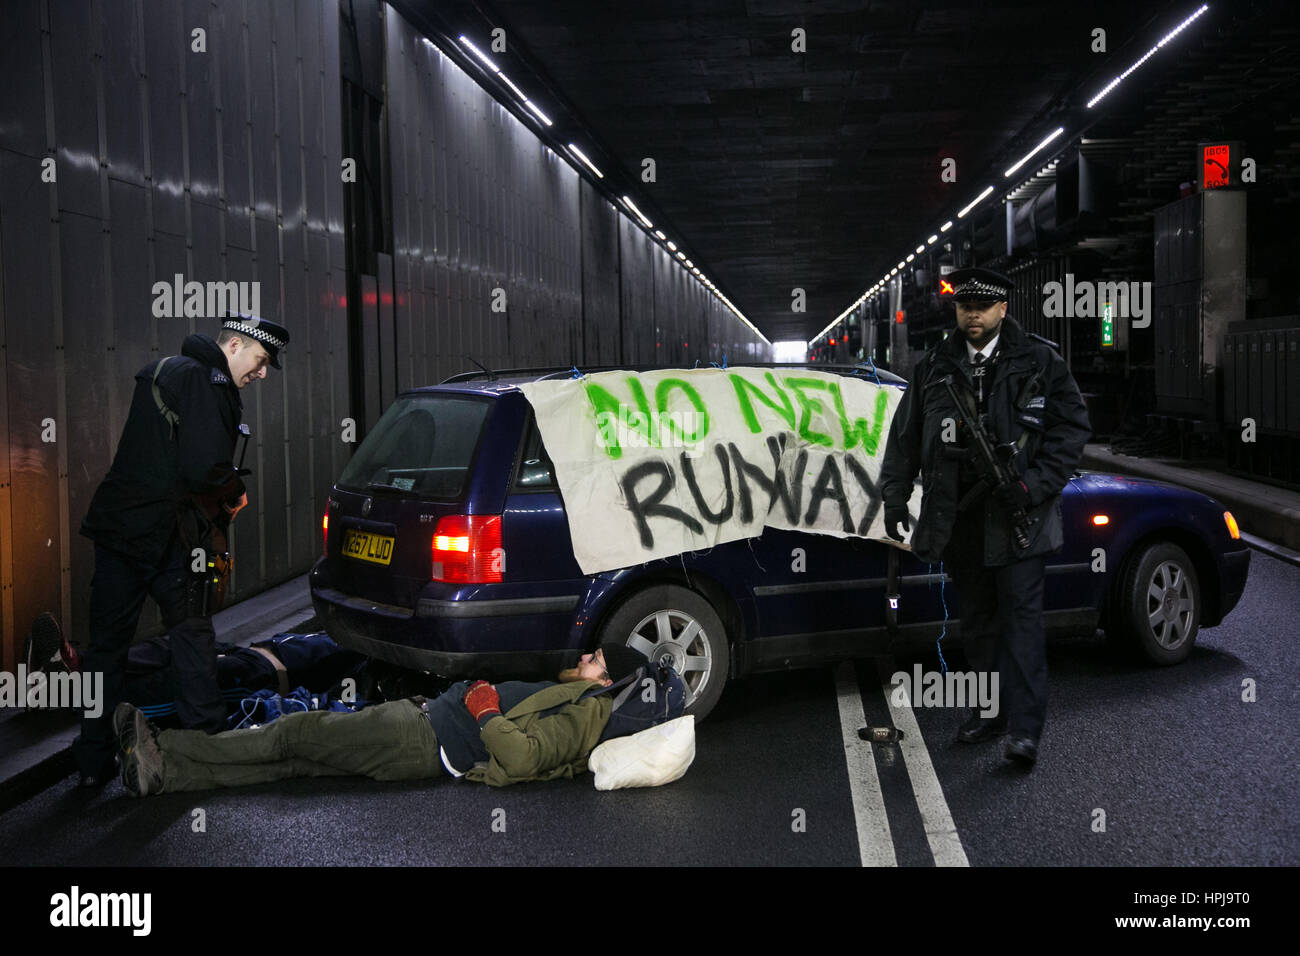 Participation à la police trois activistes du climat qui ont bloqué le tunnel d'arrivée à l'aéroport de Heathrow pour protester contre une nouvelle troisième piste. Banque D'Images